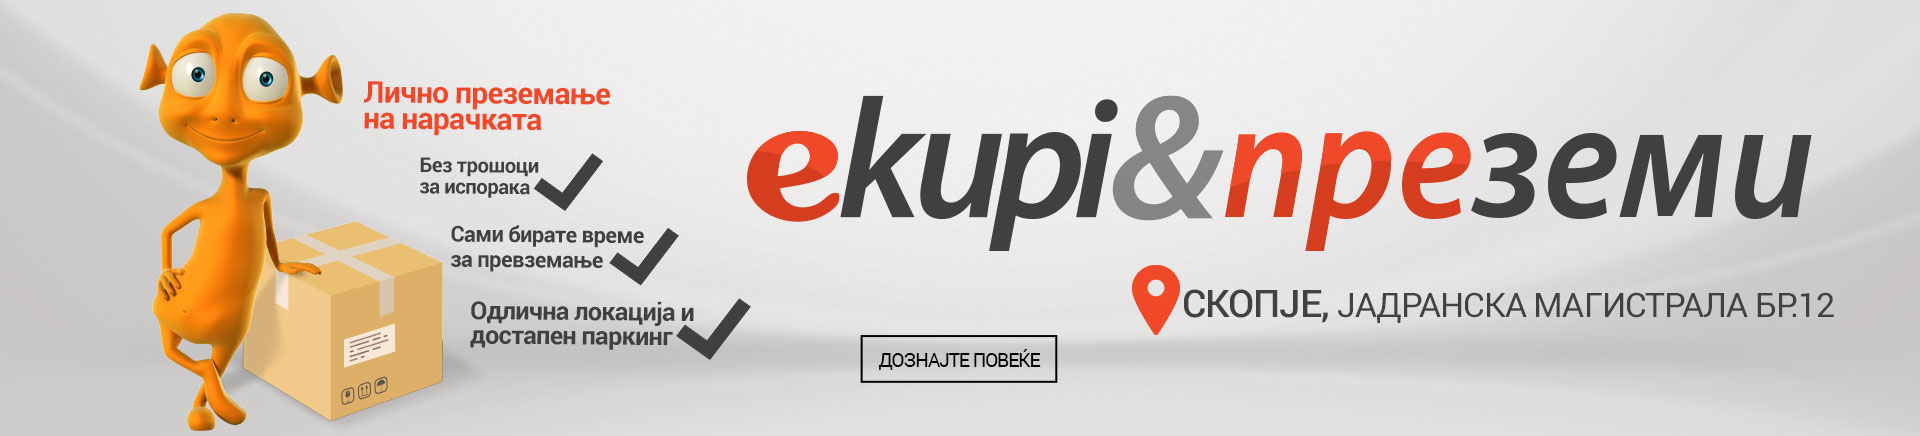 MK eKupi&amp;poKupi hybris banner final 2 MOBILE 380 X 436.jpg